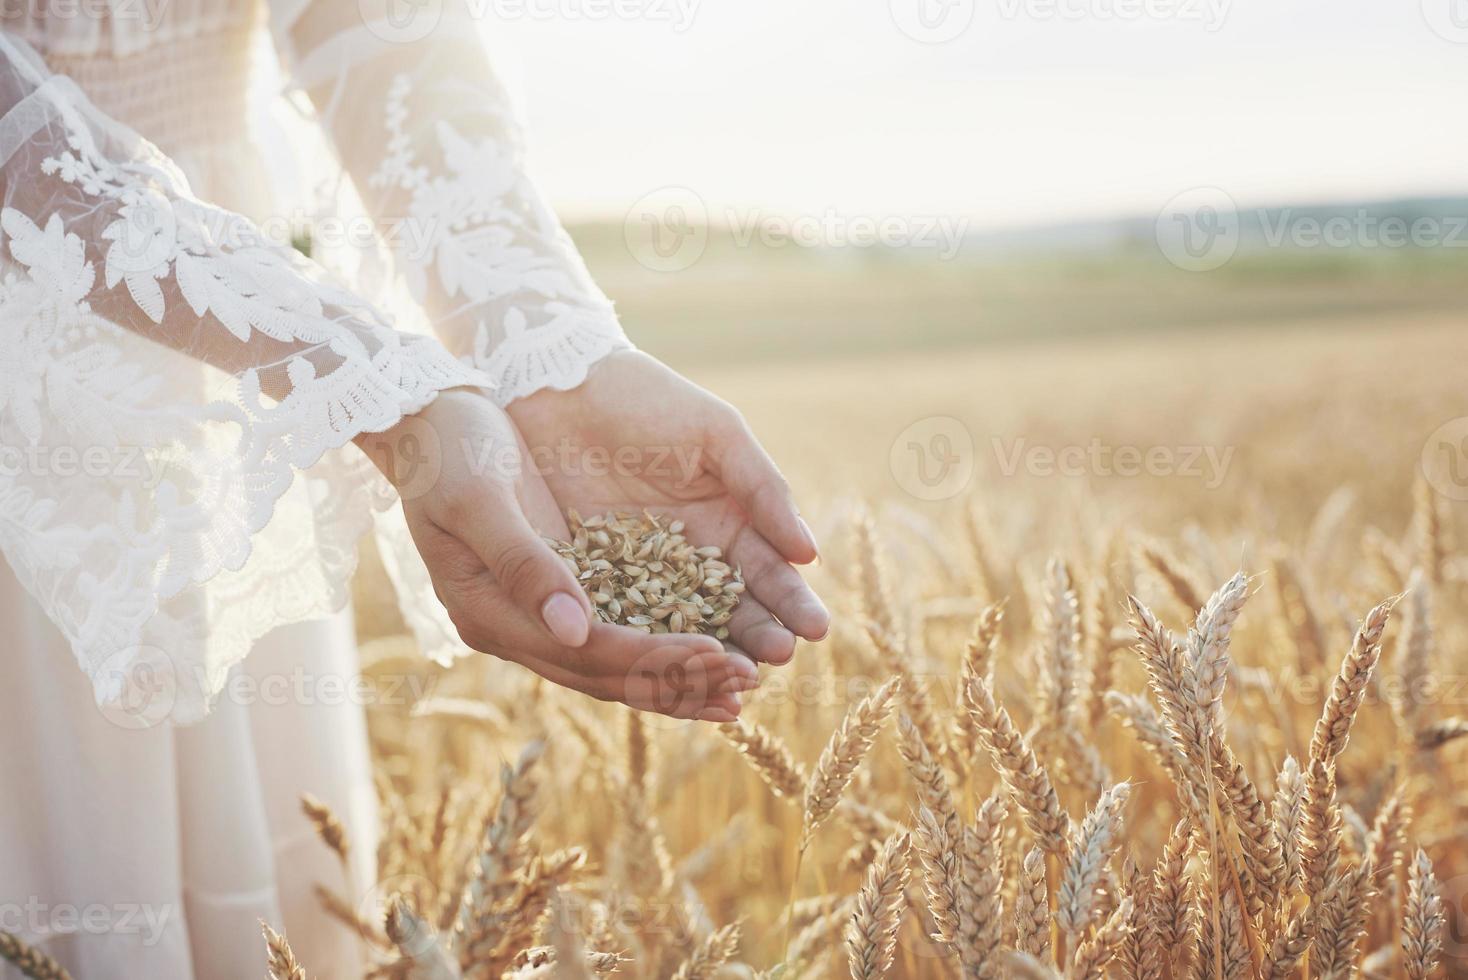 colheita, close-up de mãos de menina segurando grãos de trigo. agricultura e conceito de prosperidade foto